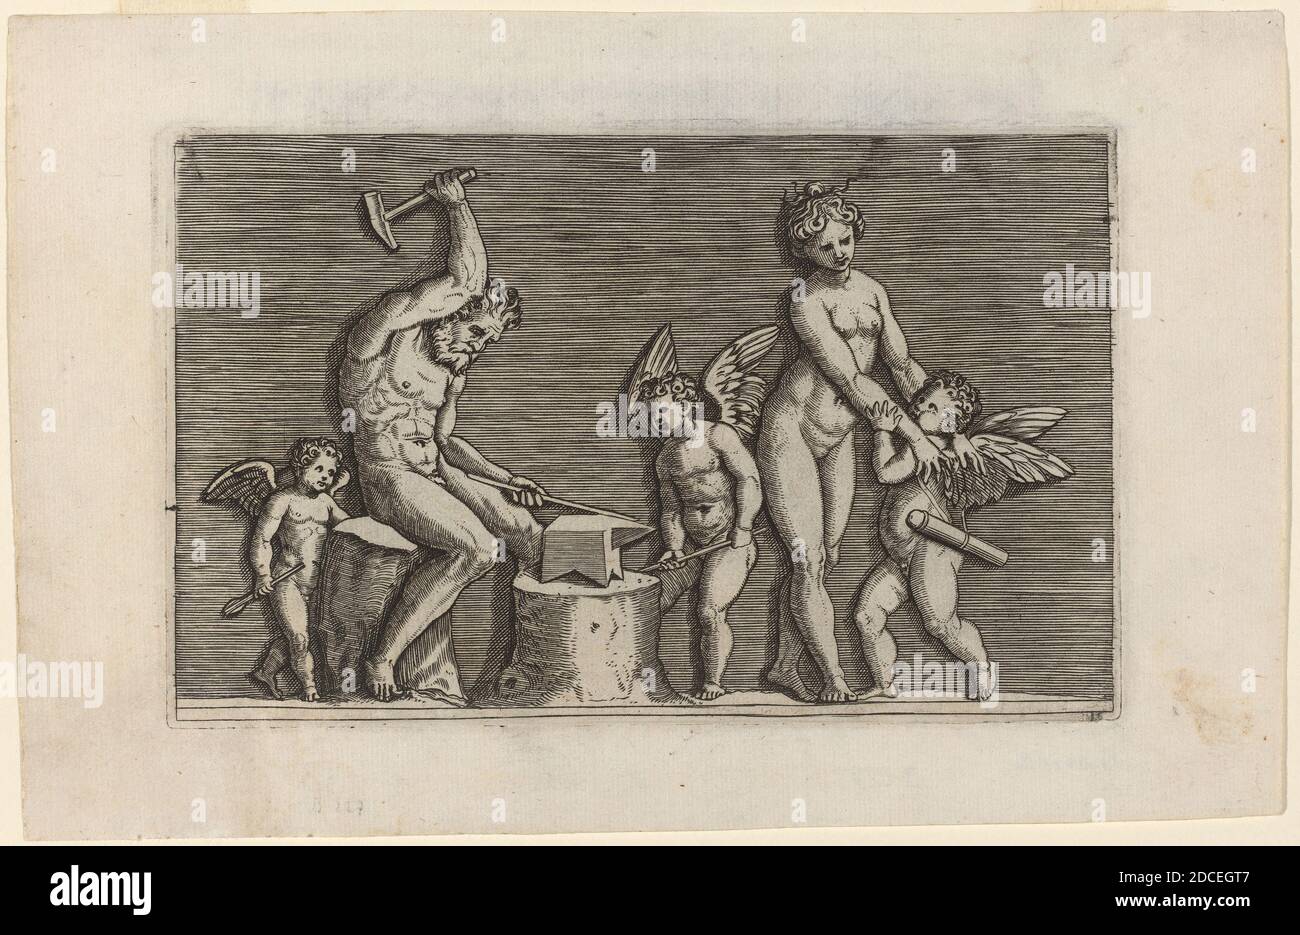 Marco dente, (artista), italiano, c. 1493 - 1527, Vulcan alla Forge, incisione Foto Stock